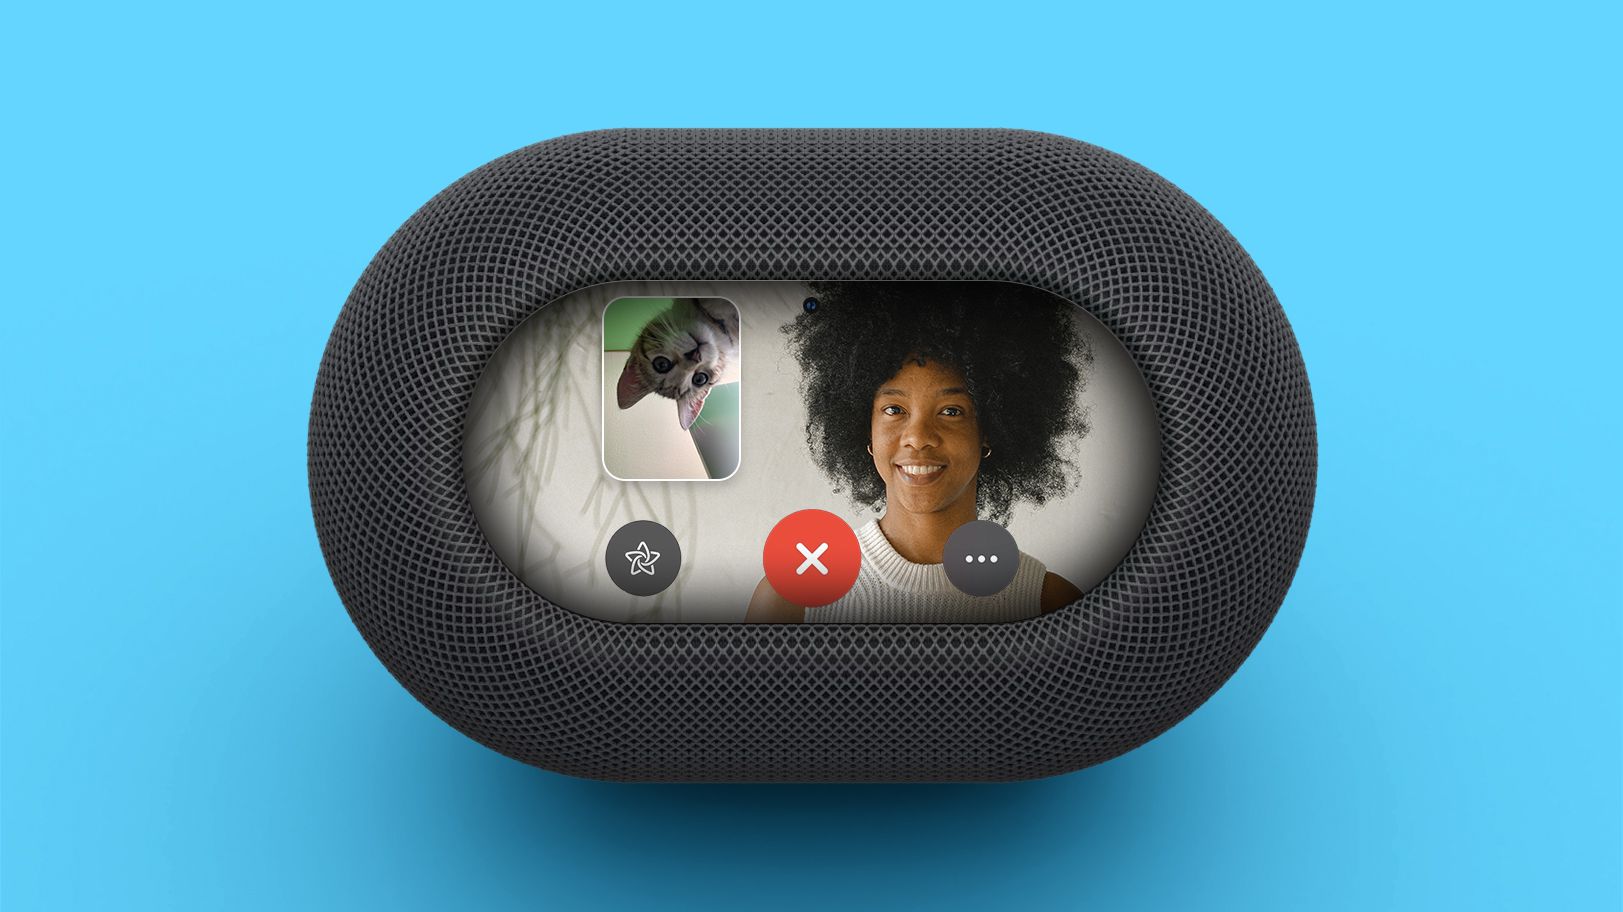 Apple adds FaceTime framework to Apple TV / HomePod amid speaker rumors